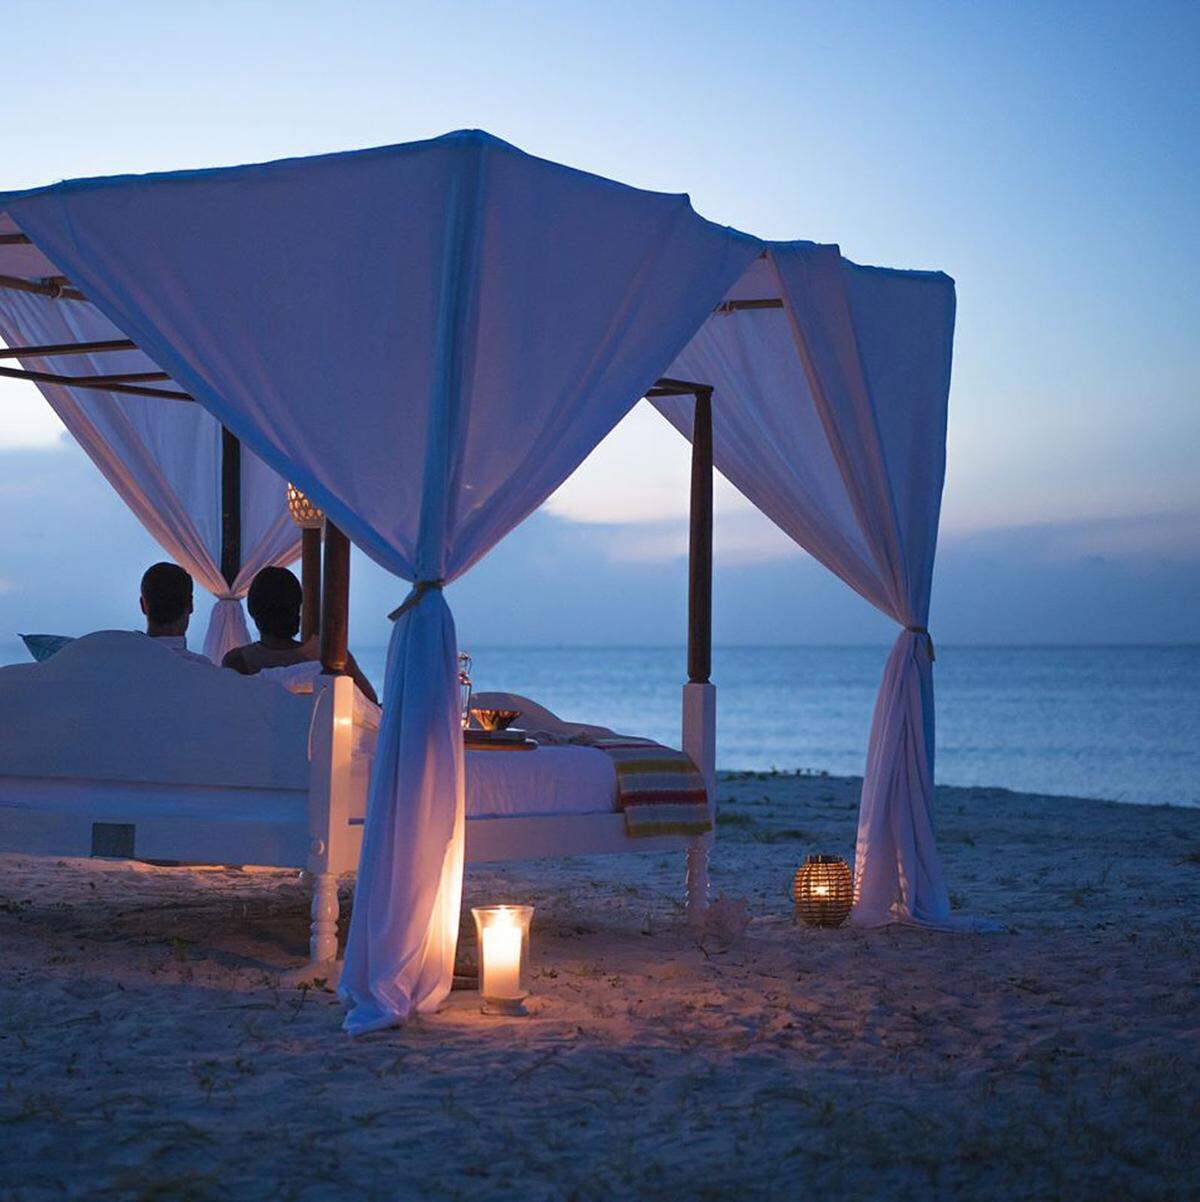 Einmal eine Nacht unter freiem Himmel verbringen. Diesen Traum kann man sich in Hotels in Italien, Afrika oder den Malediven erfüllen. Im Anantara Medjumbe Island Resort in Mosambik kann man etwa die "Star Bed Experience" buchen.